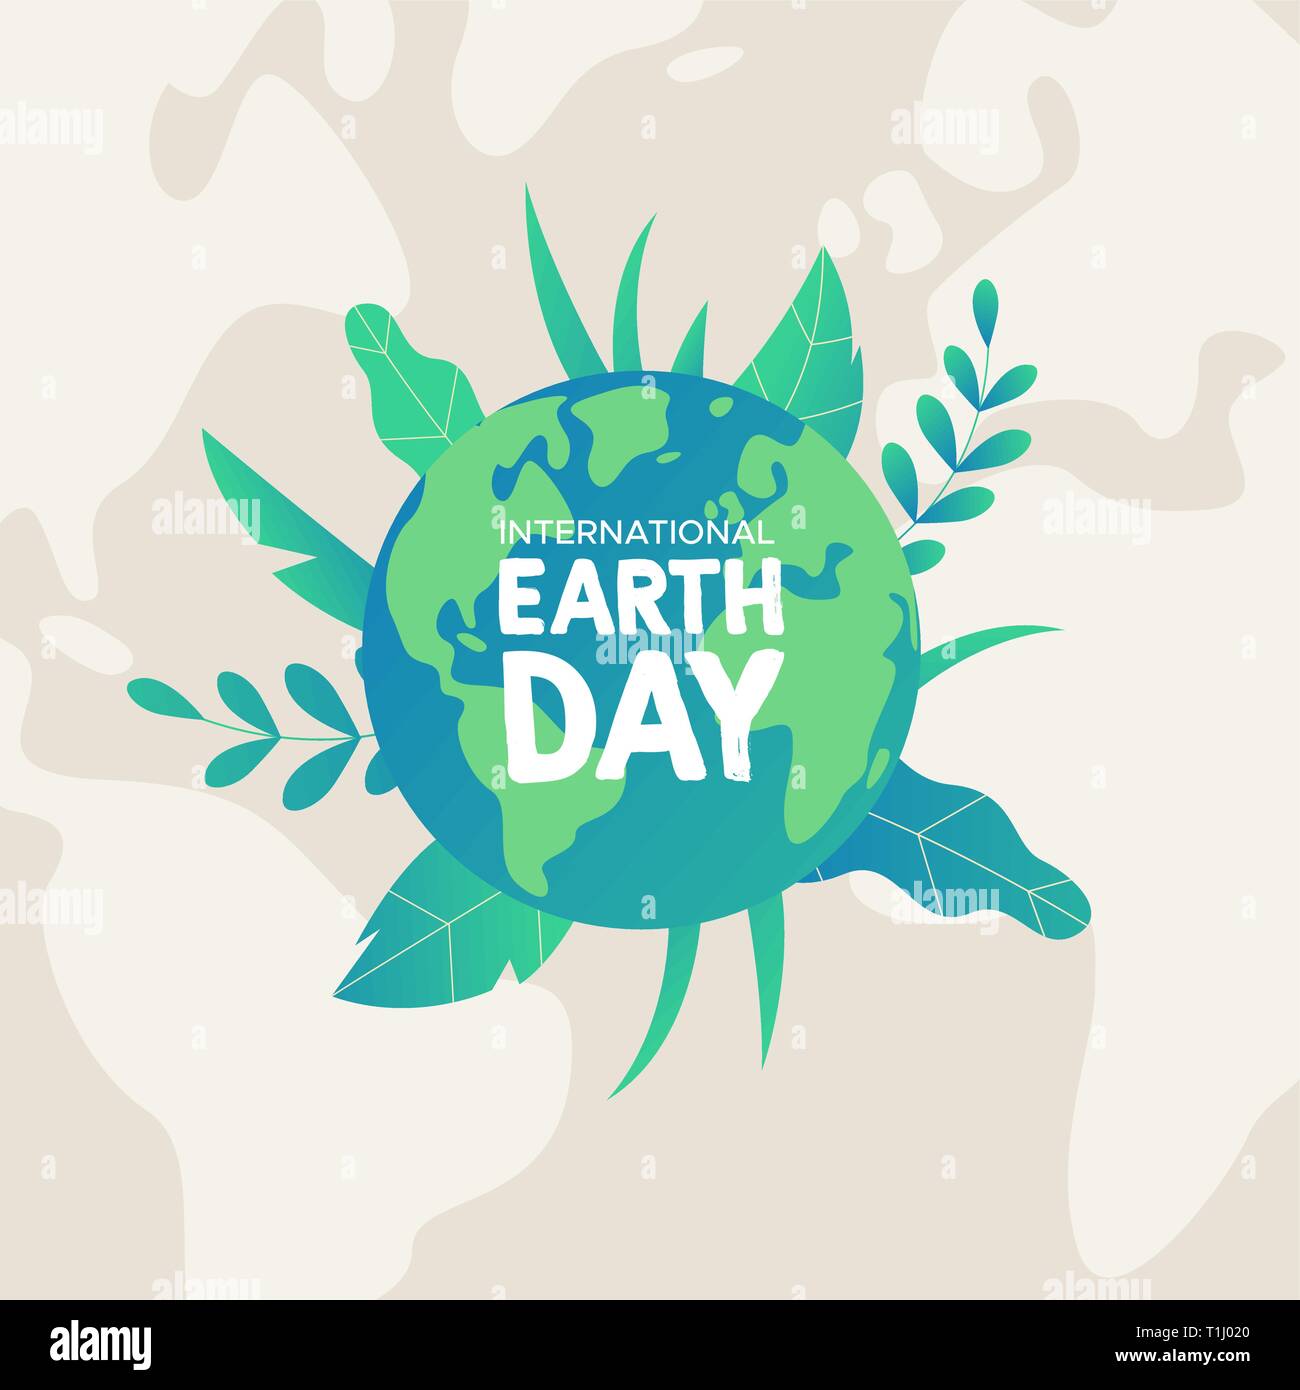 Journée internationale de la Terre illustration. Planète verte avec des feuilles de plantes tropicales pour la nature et l'environnement de l'aide. Illustration de Vecteur